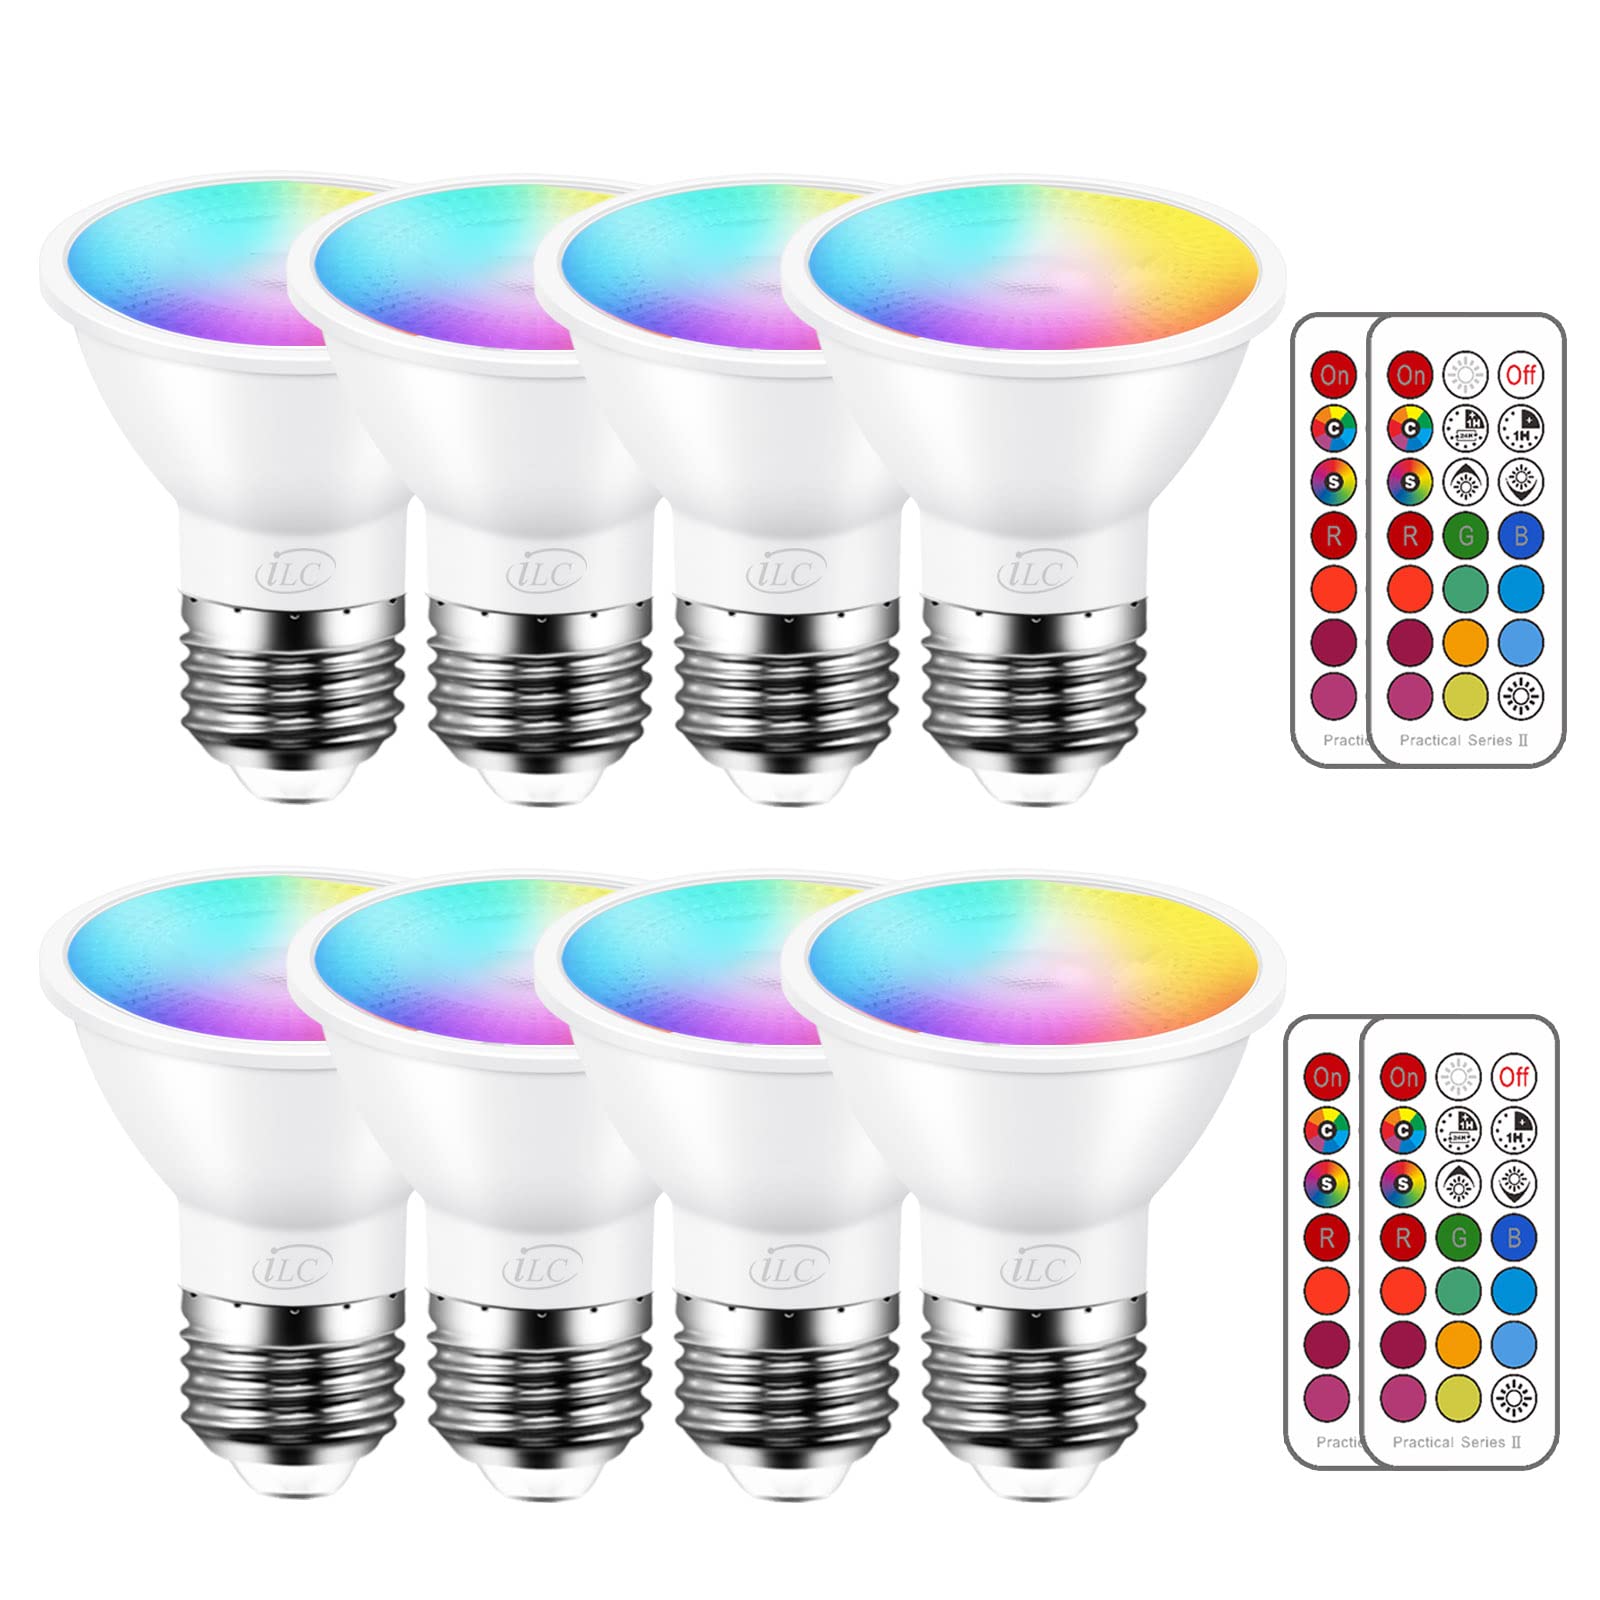 ILC Par16 LED-Glühbirnen, 40-Watt-Äquivalent, Farbwechsel, E26-Schraube, Abstrahlwinkel 45°, 12 Farben, dimmbar, warmweiß, 2700 K, RGB-LED-Spot-Glühbirne mit 5-W-Fernbedienung, (8 Stück)